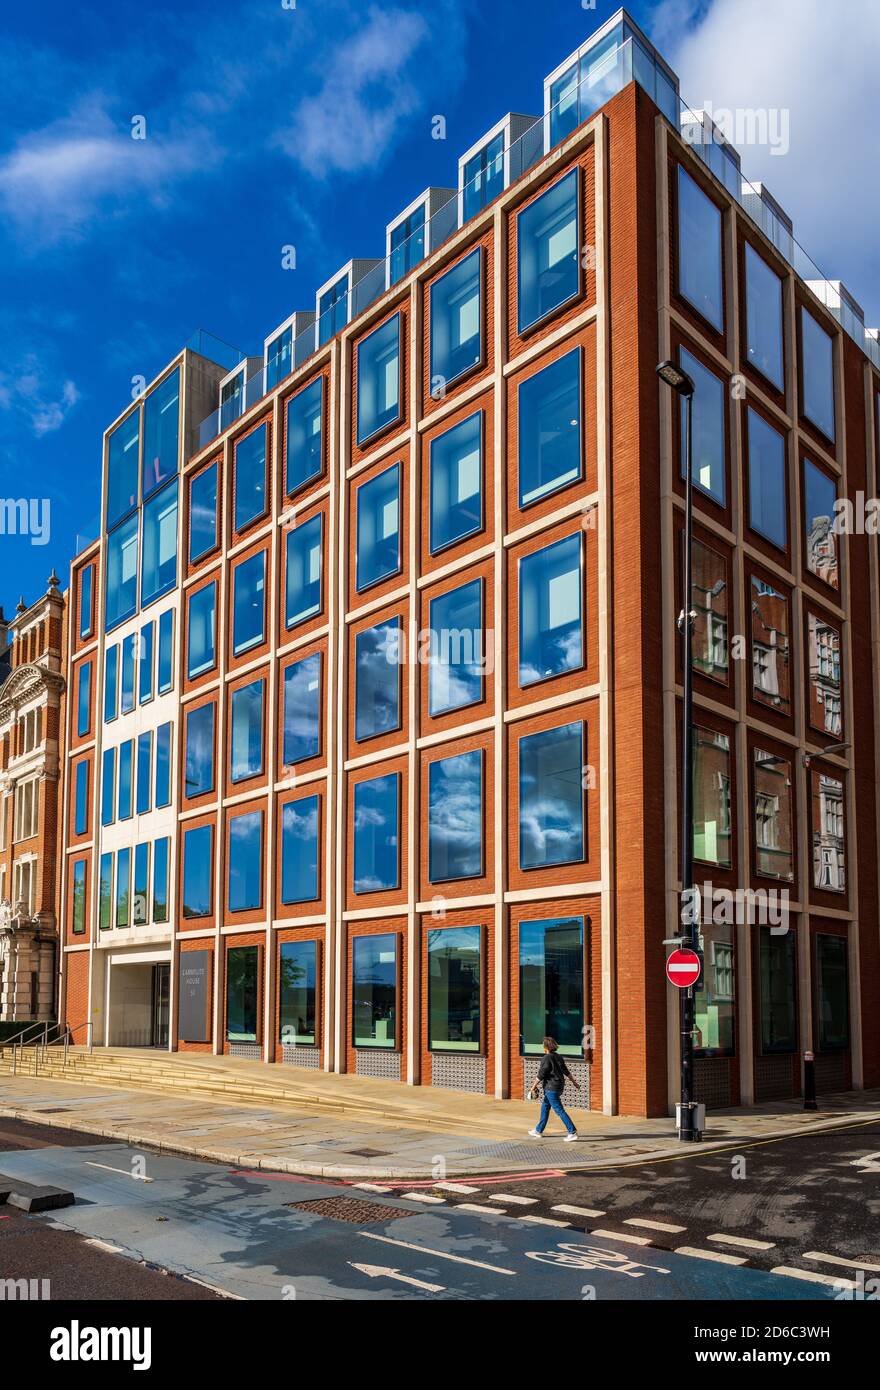 Carmelitana House 50 Victoria Embankment Londra - sviluppo uffici sul lungofiume di Londra, architetto Fletcher Priest Architects 2014. Foto Stock